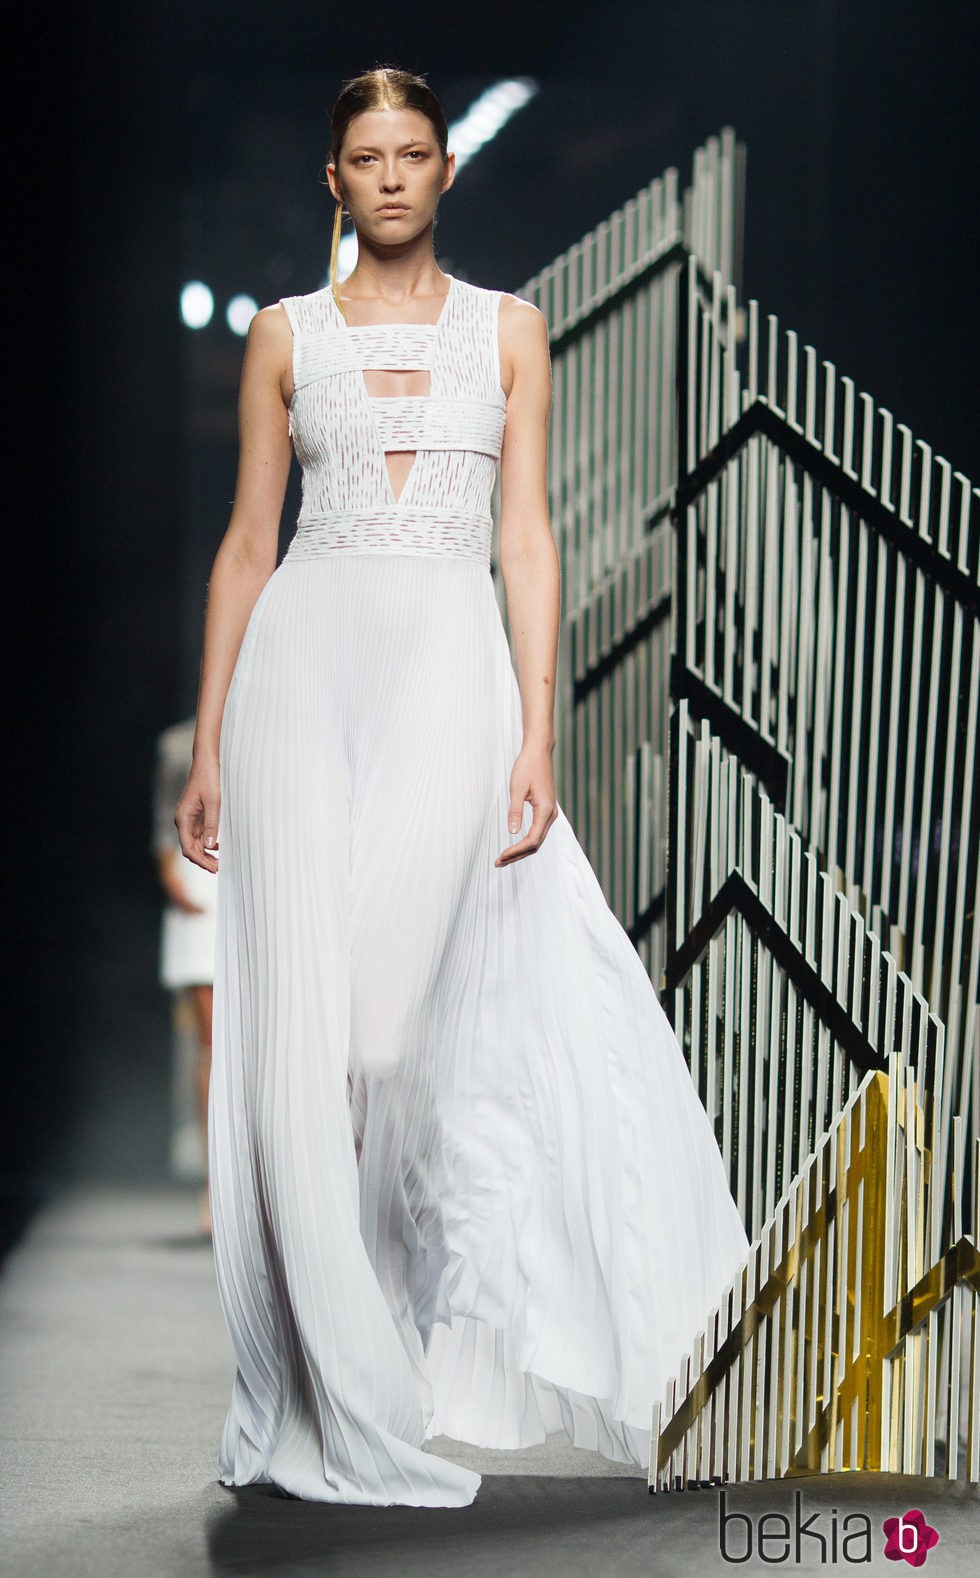 Vestido blanco de la colección de primavera/verano 2016 de Alvarno en Madrid Fashion Week